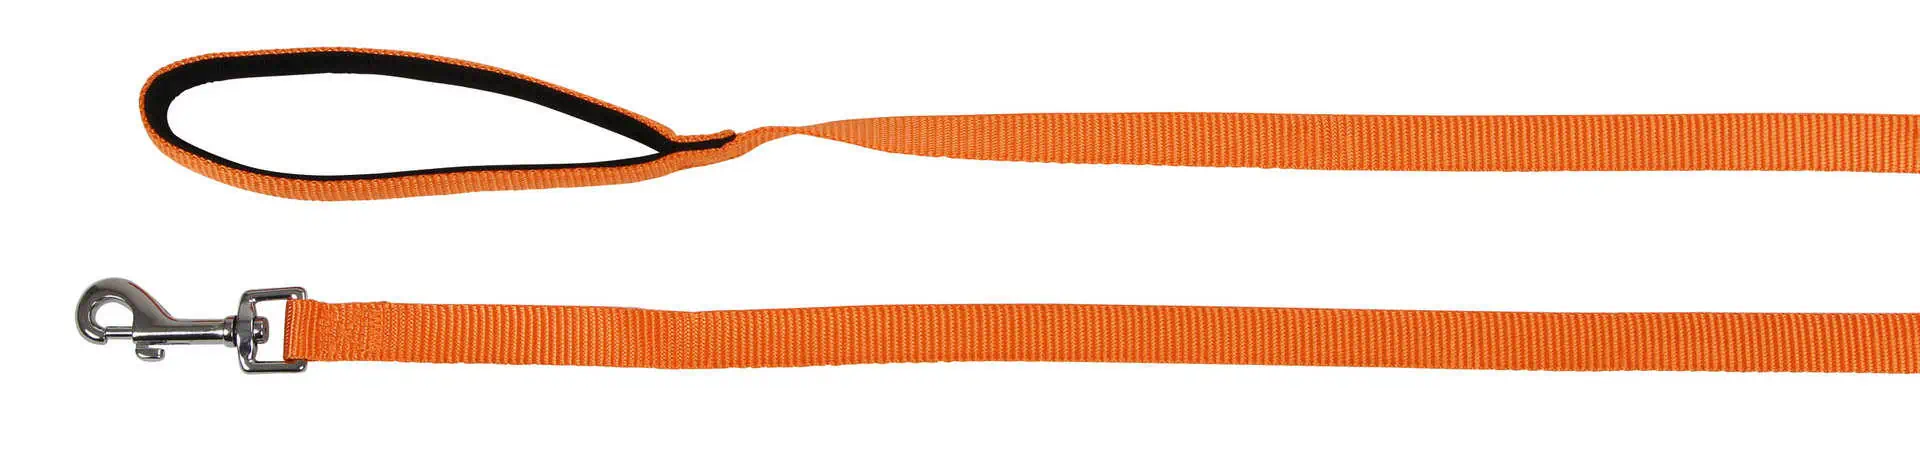 Towline Miami with soft grip orange, 10m x 20mm